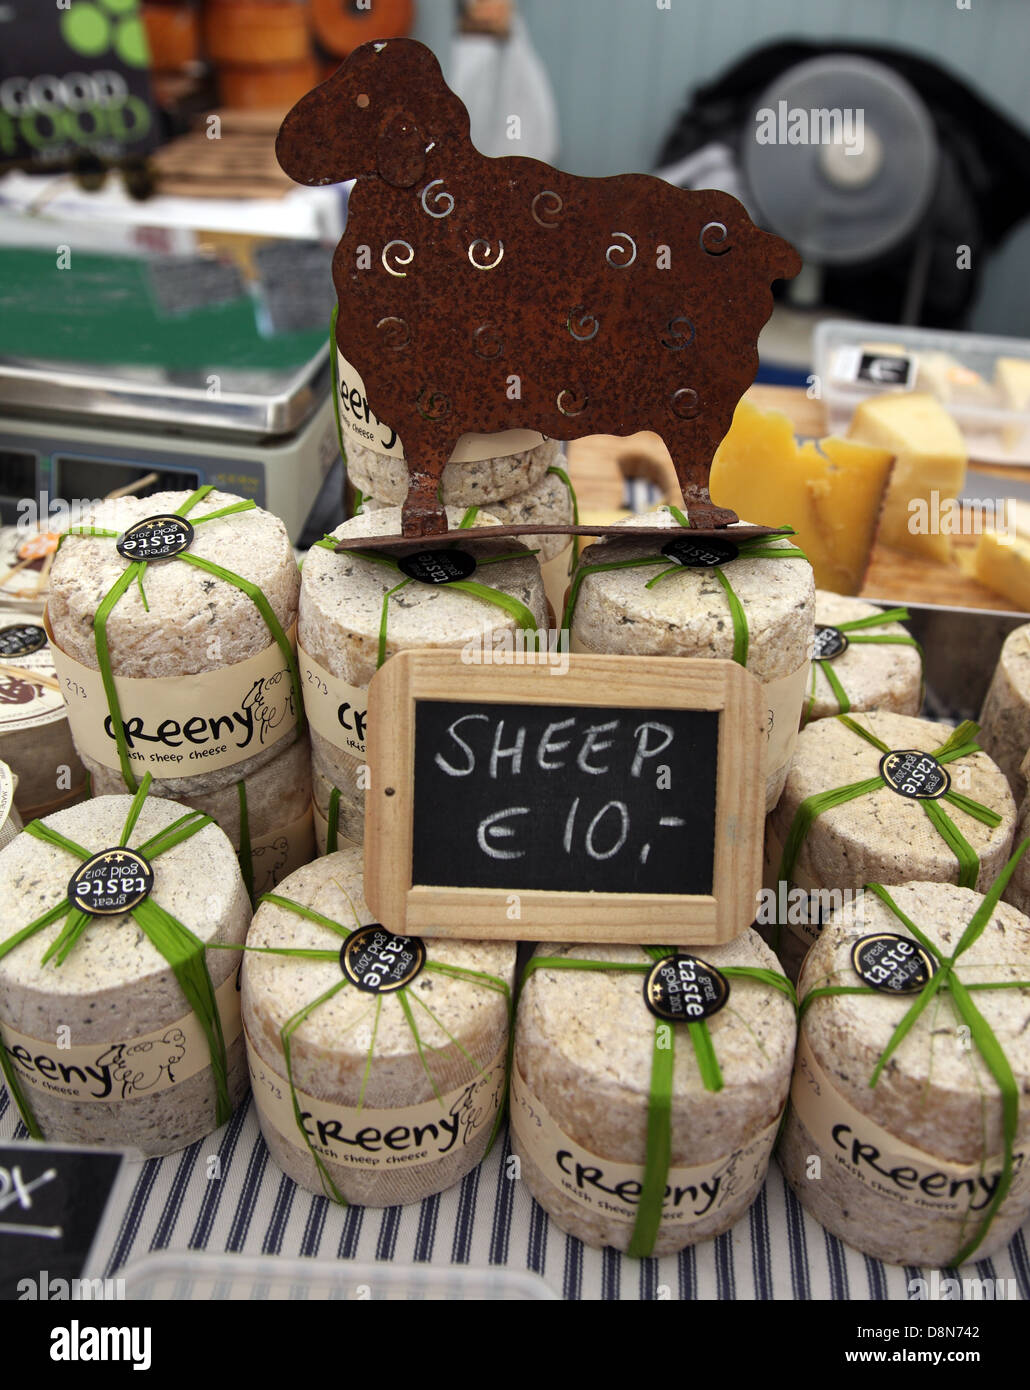 Creeny, Corleggy Irish sheep's milk cheese on sale at Bloom 2013 Stock Photo